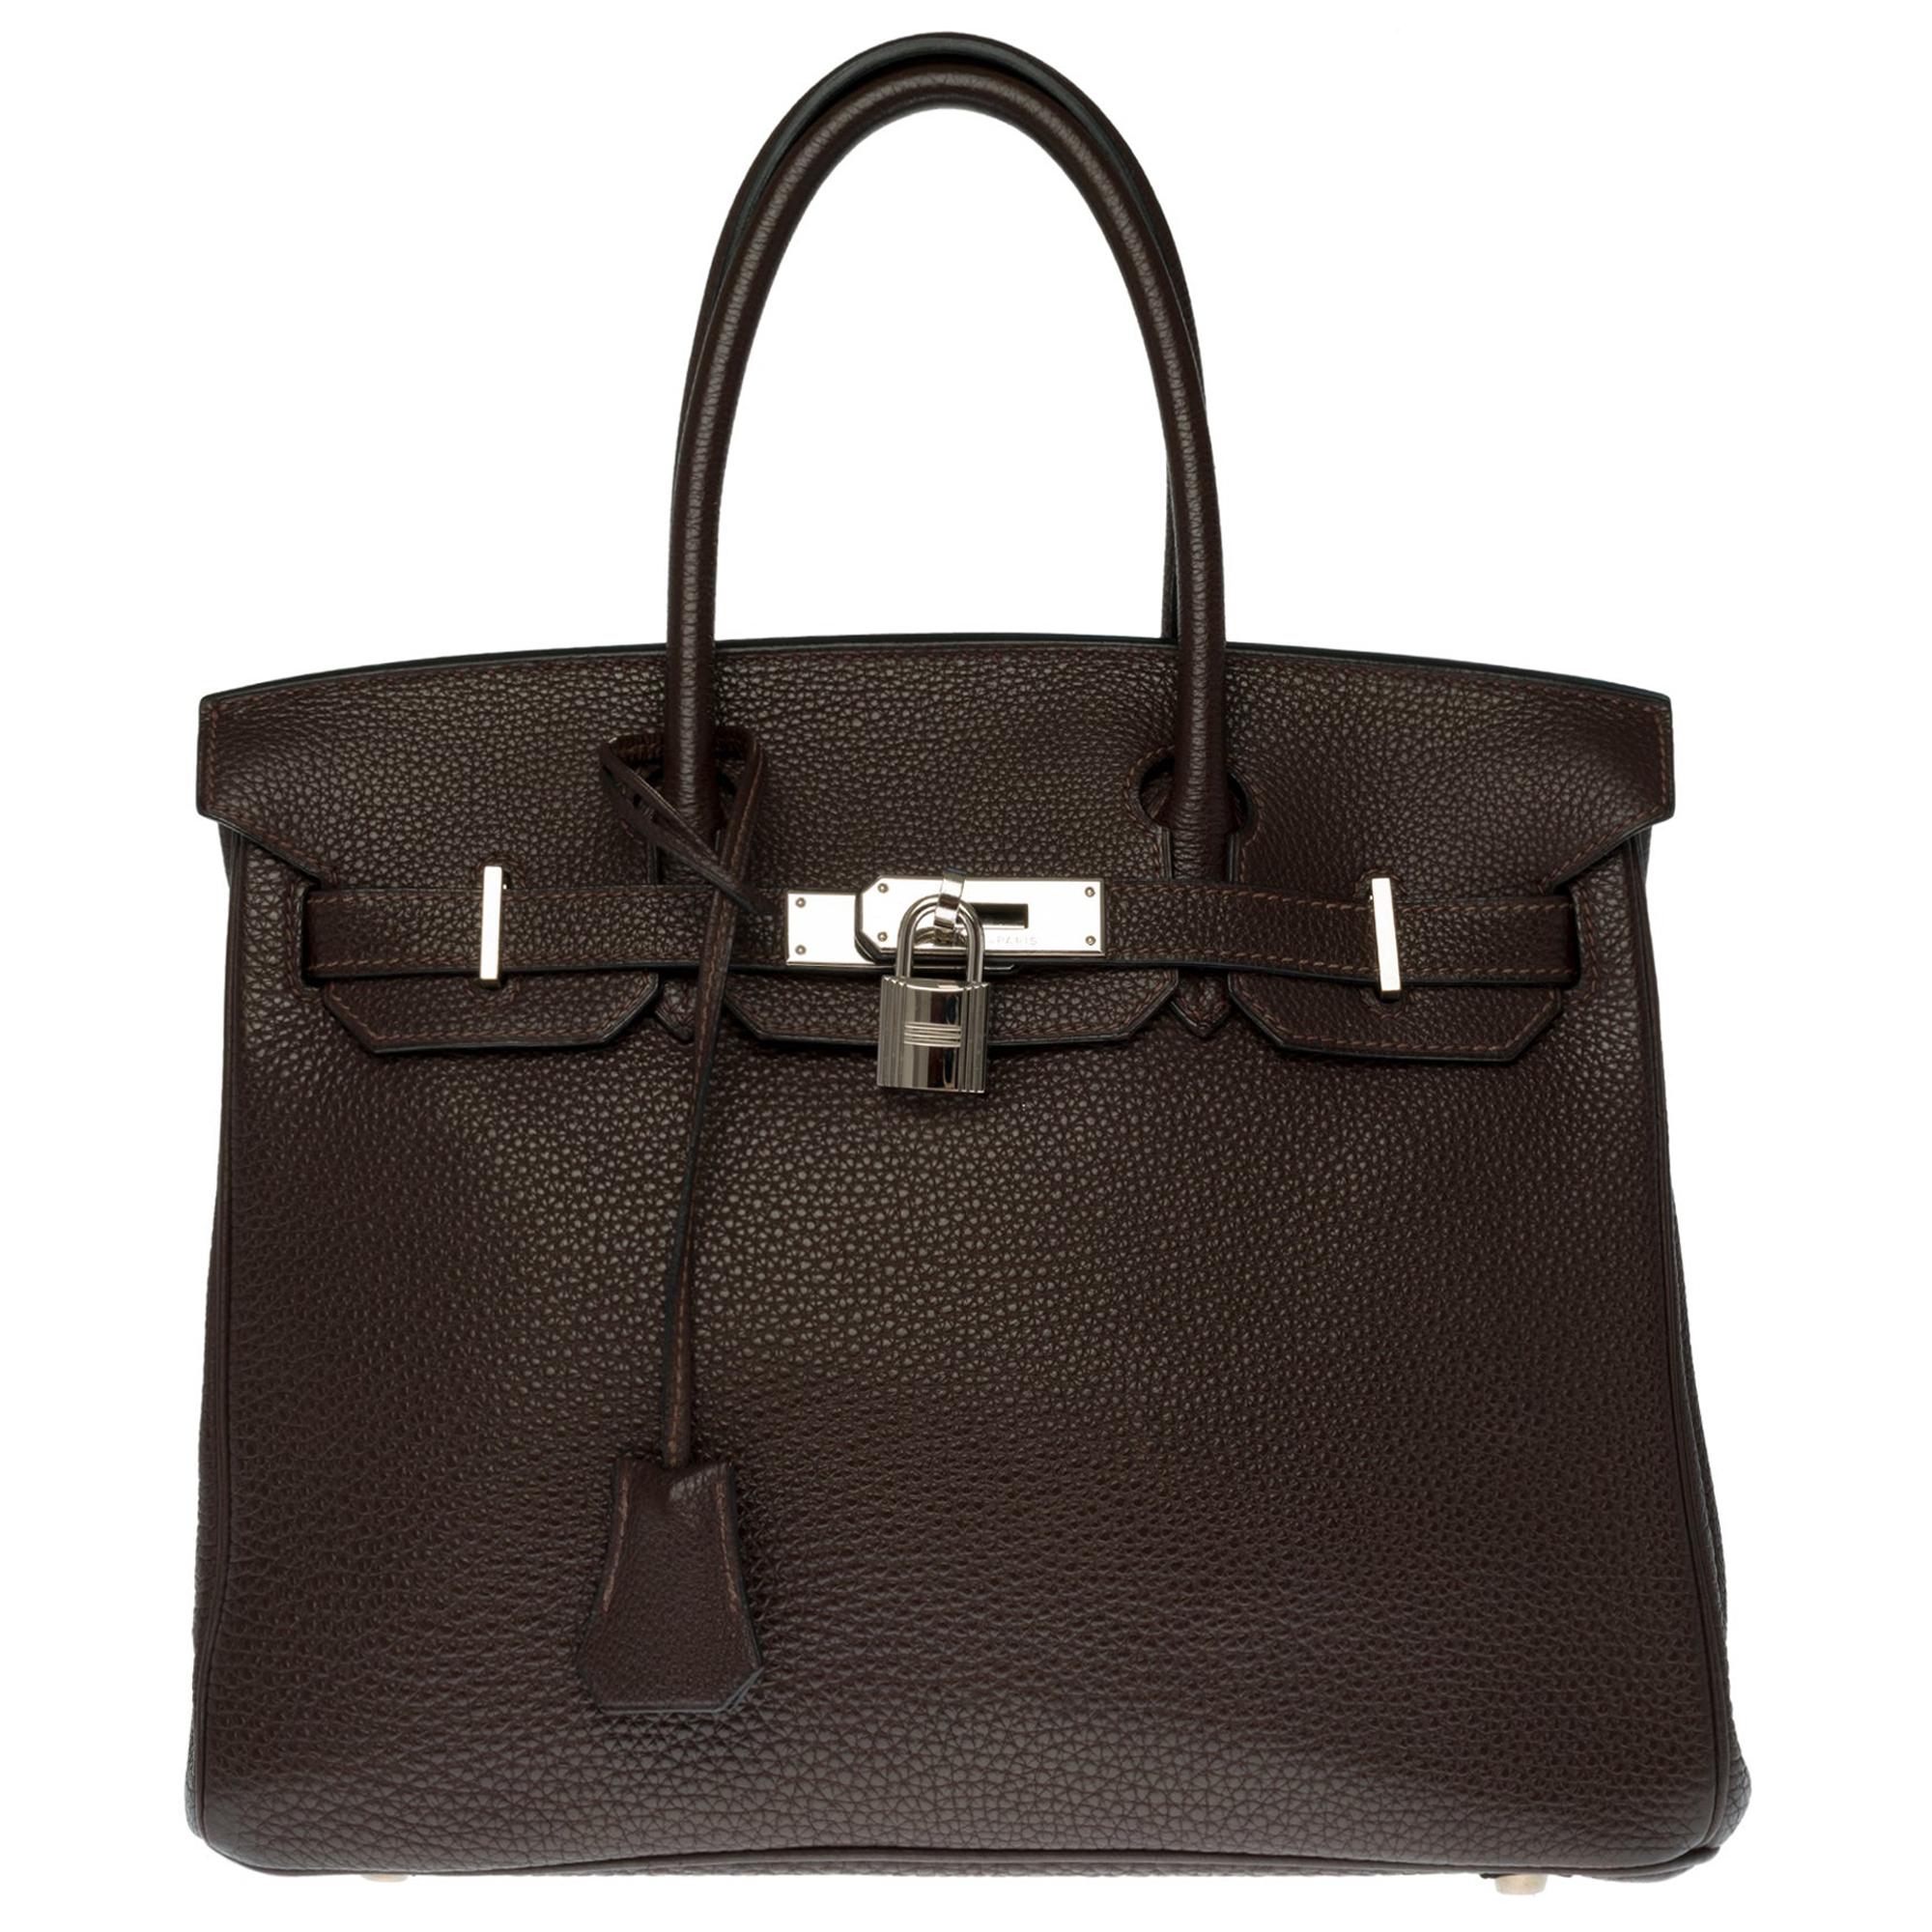 Hermès Birkin 30 handbag in Brown Togo leather, silver Palladium hardware